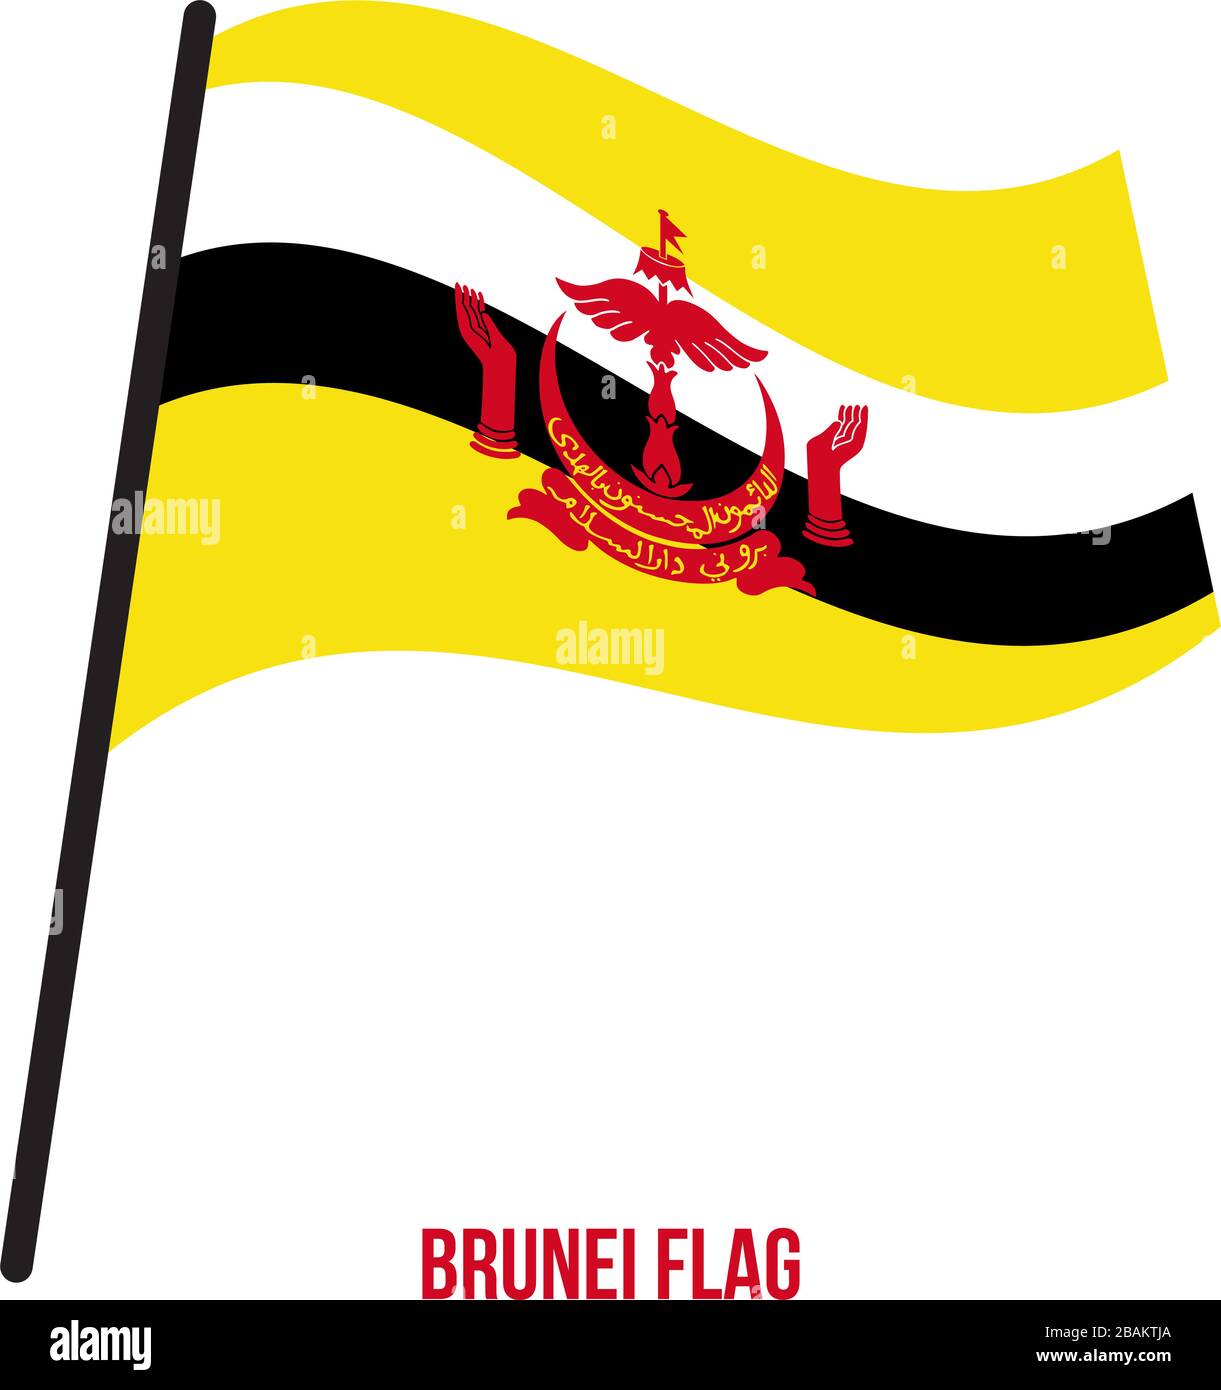 Brunei bandiera sventola illustrazione vettoriale su sfondo bianco. Brunei bandiera nazionale. Illustrazione Vettoriale